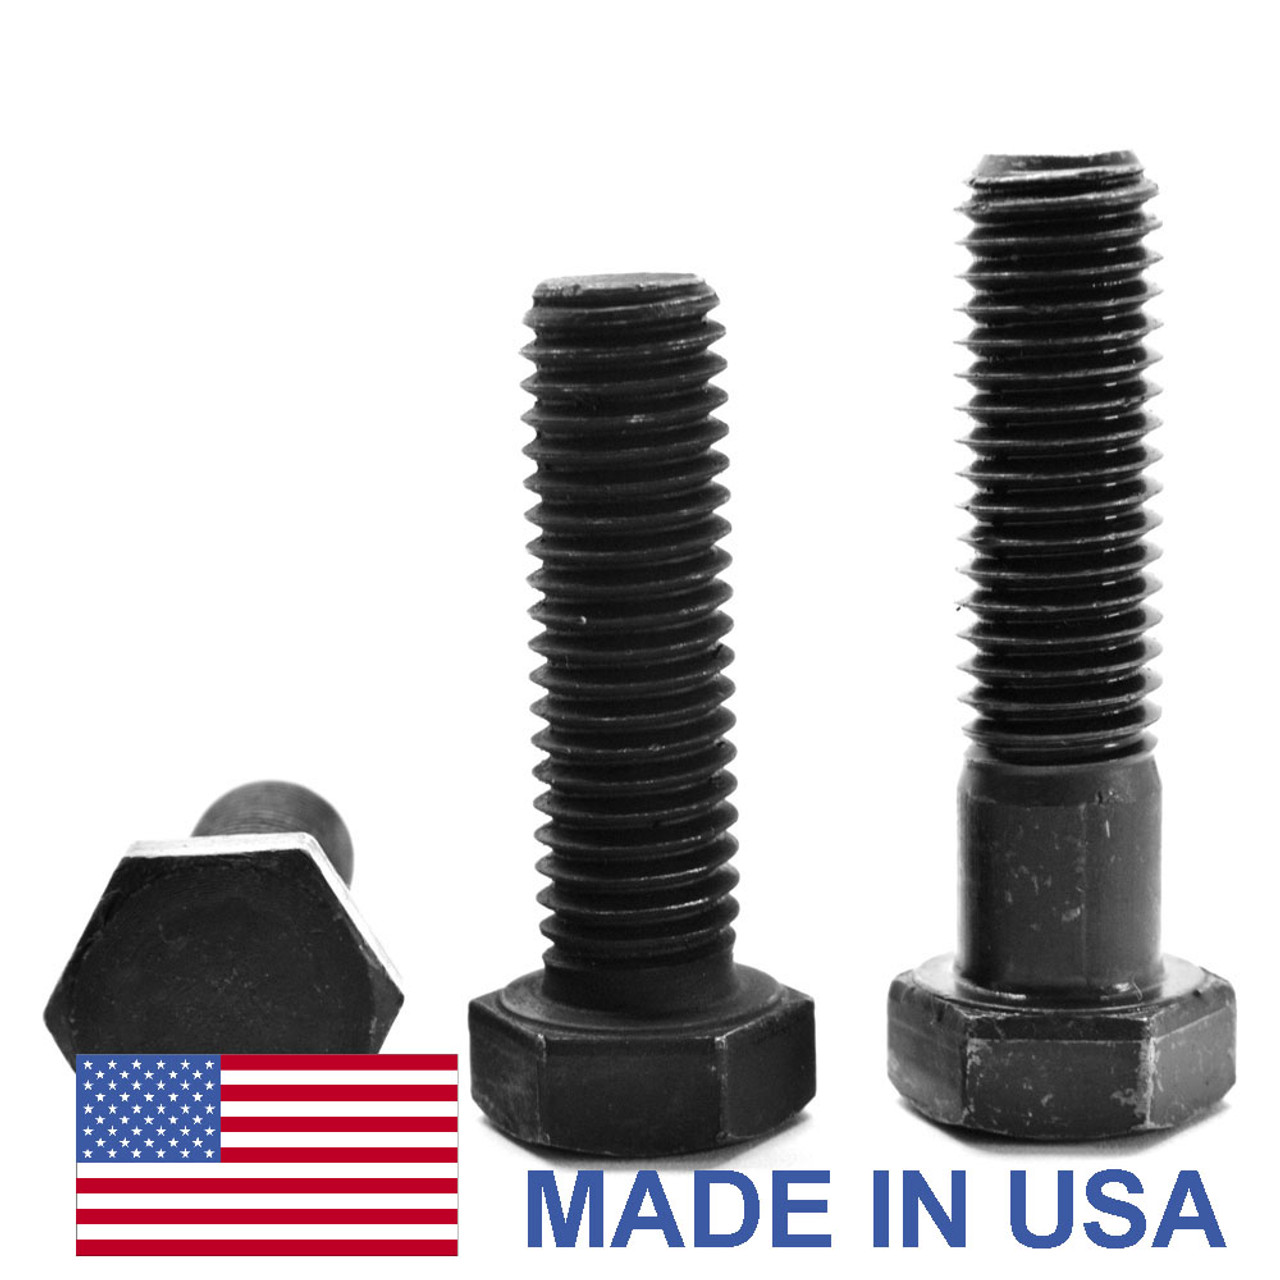 1"-14 x 3" (FT) UNS Thread Grade 5 Hex Cap Screw (Bolt) - USA Medium Carbon Steel Black Oxide